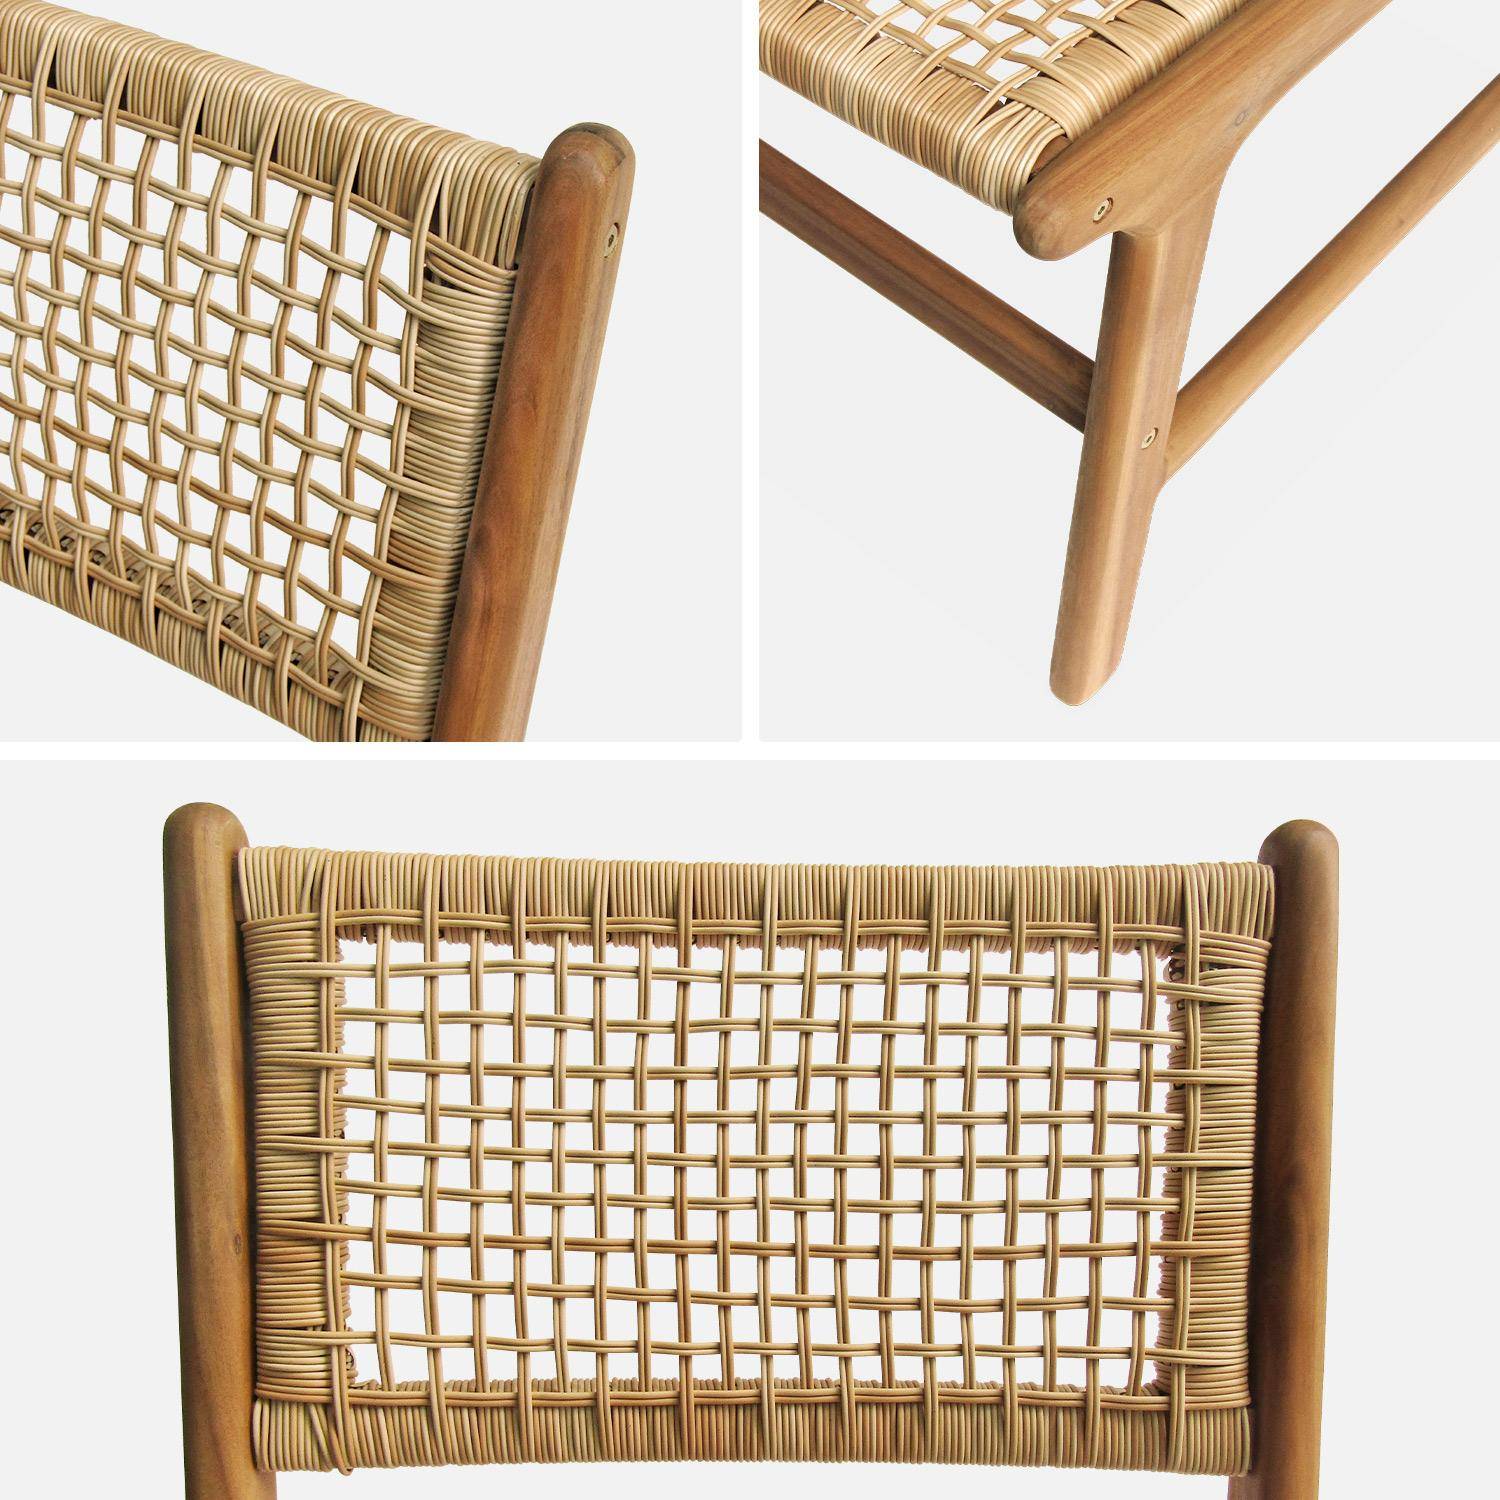 Table intérieur / extérieur Santana en bois et métal 150cm + 4 chaises de jardin Ocara, cannage et bois Photo6